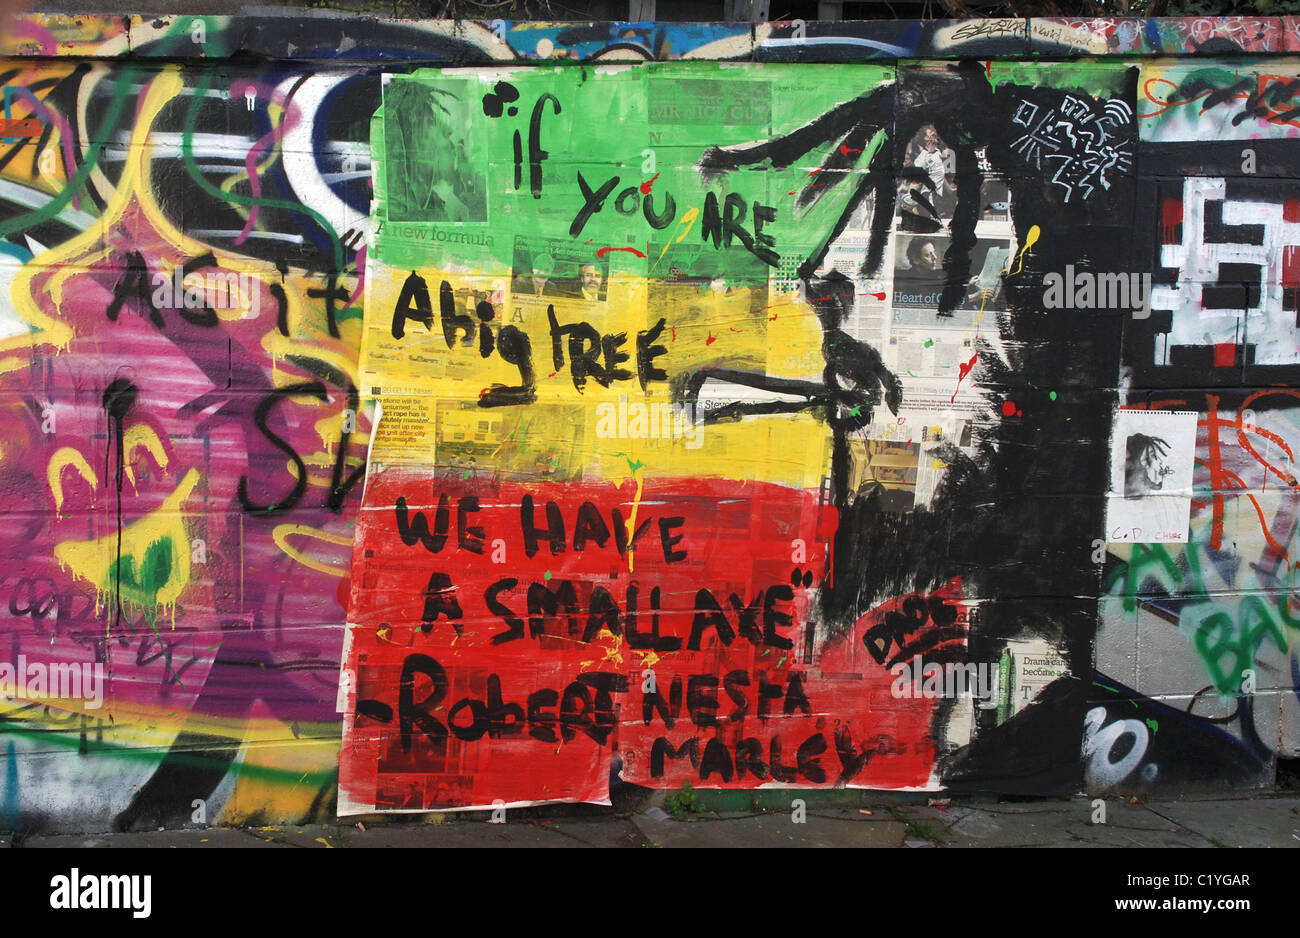 Bob Marley graffiti sur un mur à Edimbourg avec le cite, "si vous êtes un grand arbre, nous avons une petite hache'. Banque D'Images